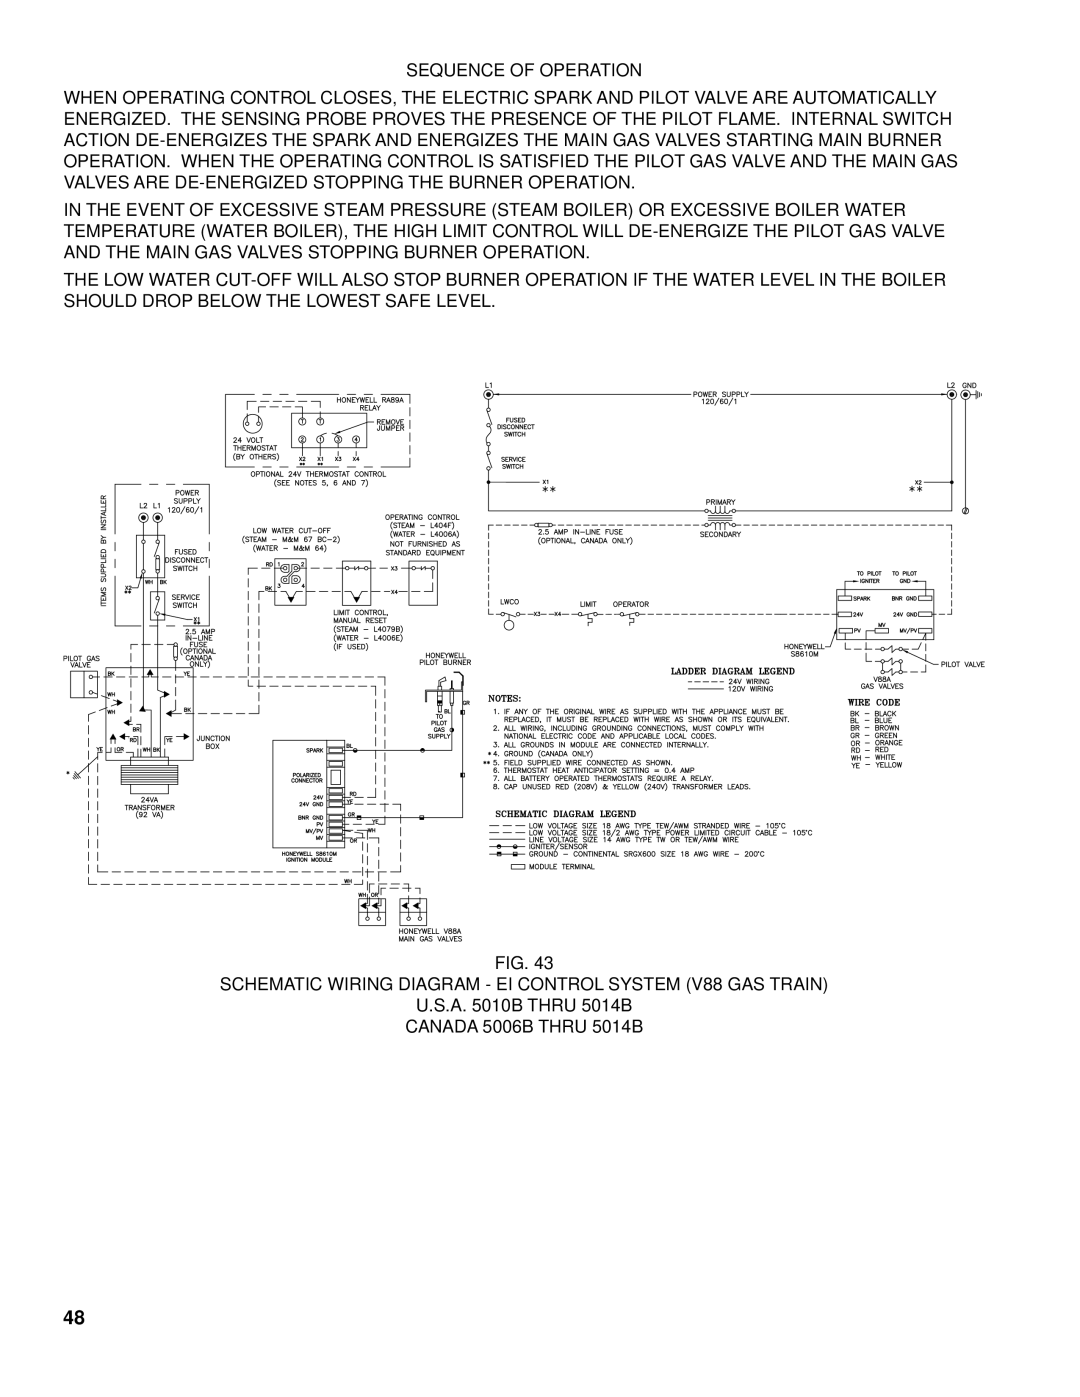 Burnham K50 manual Sequence of Operation, Schematic Wiring Diagram EI Control System V88 GAS Train, A B Thru 5014B 